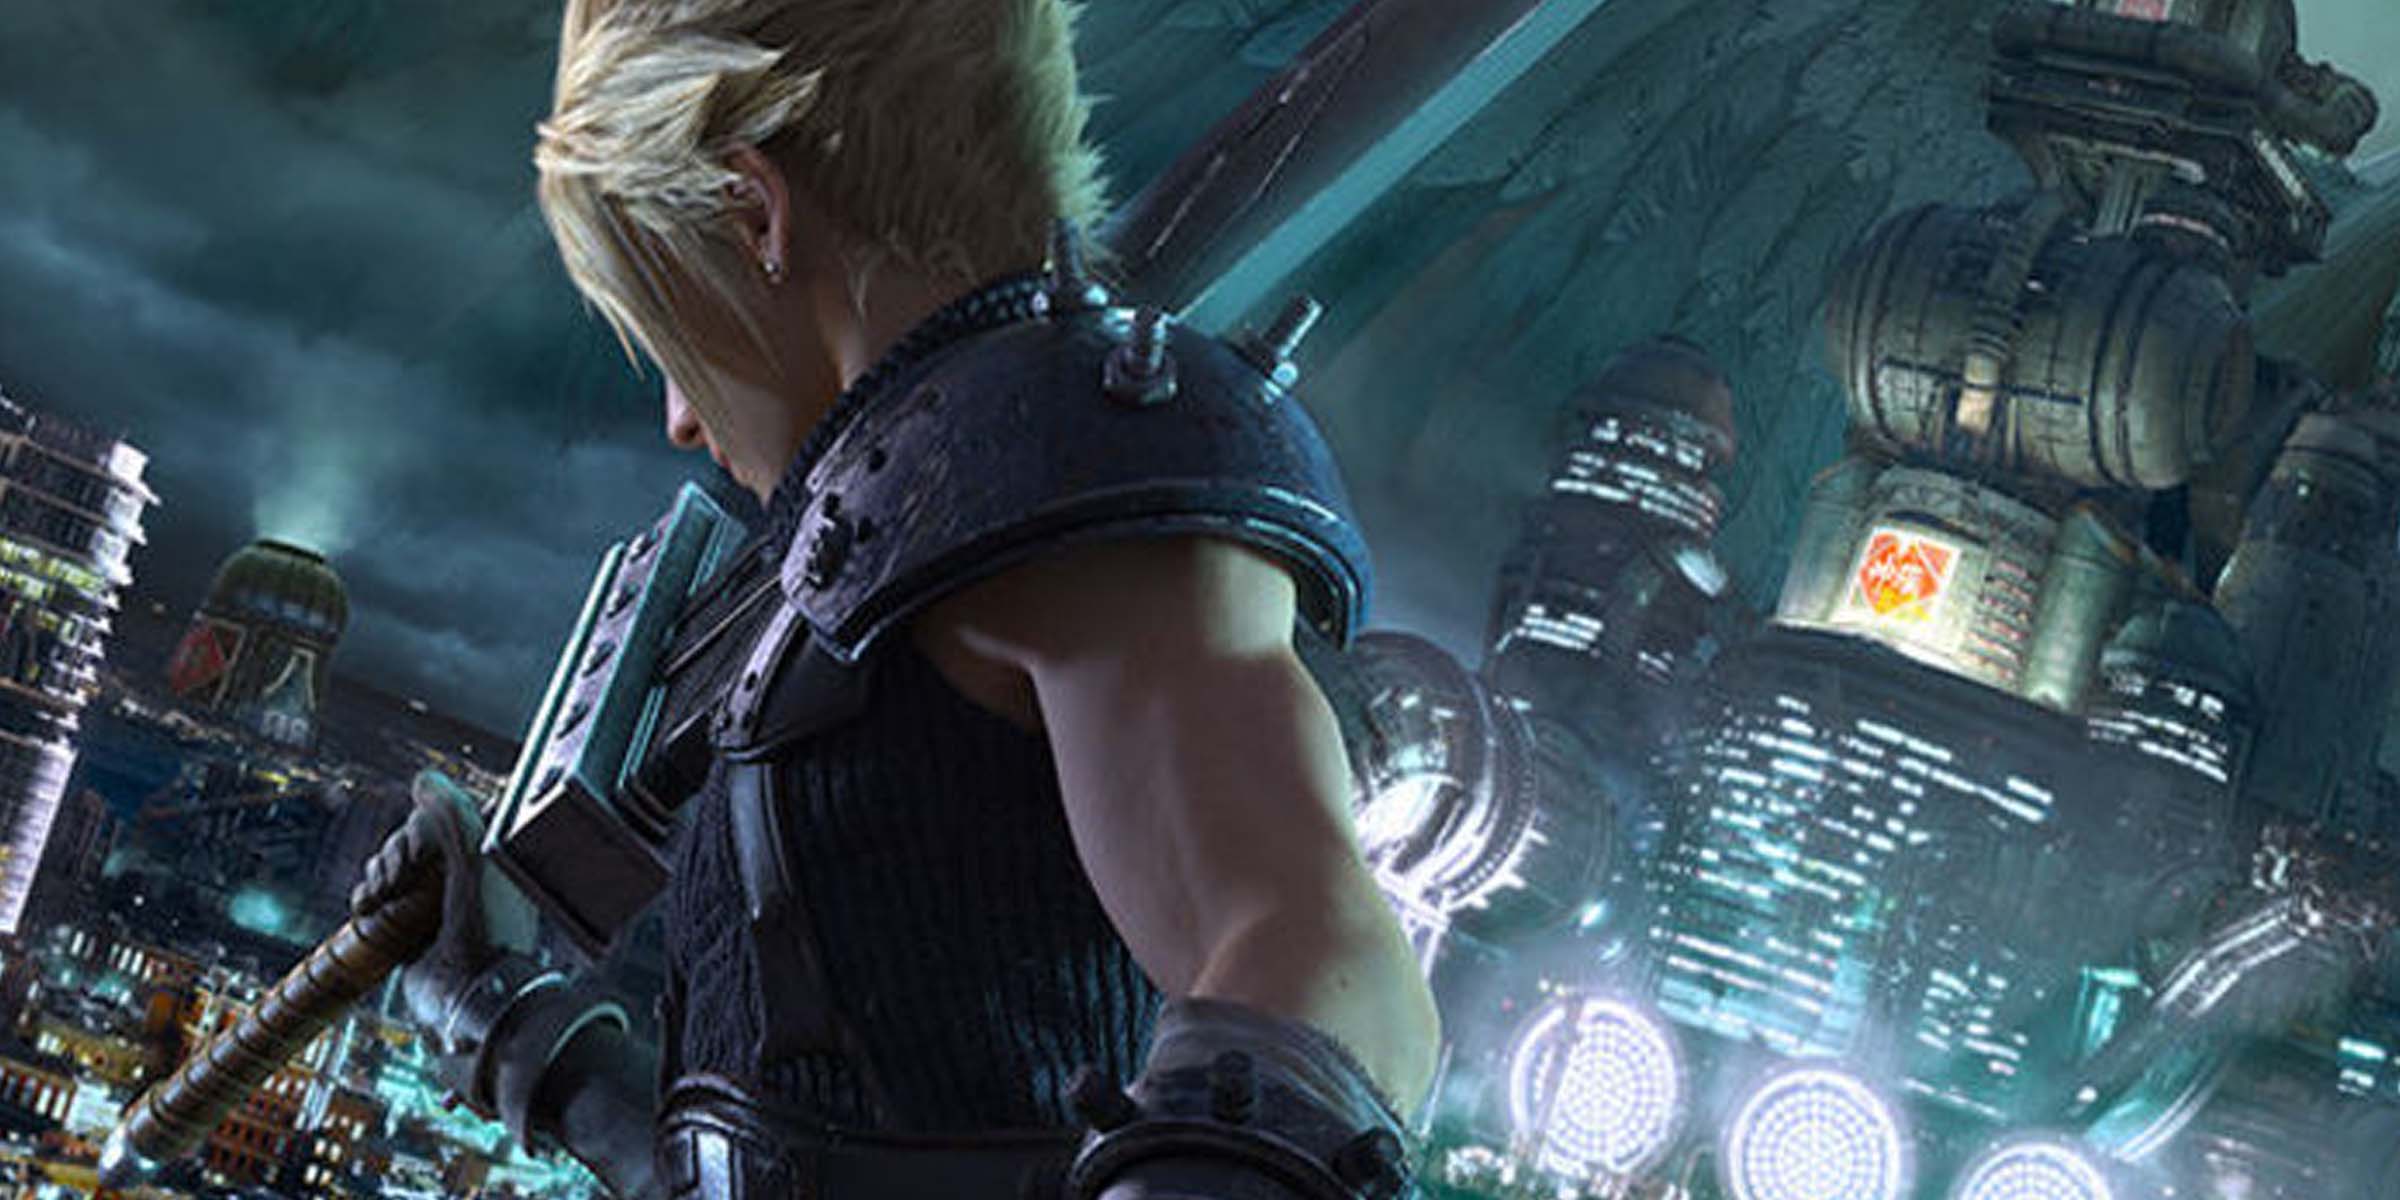 Nomura assicura: lo sviluppo del remake di Final Fantasy VII procede bene